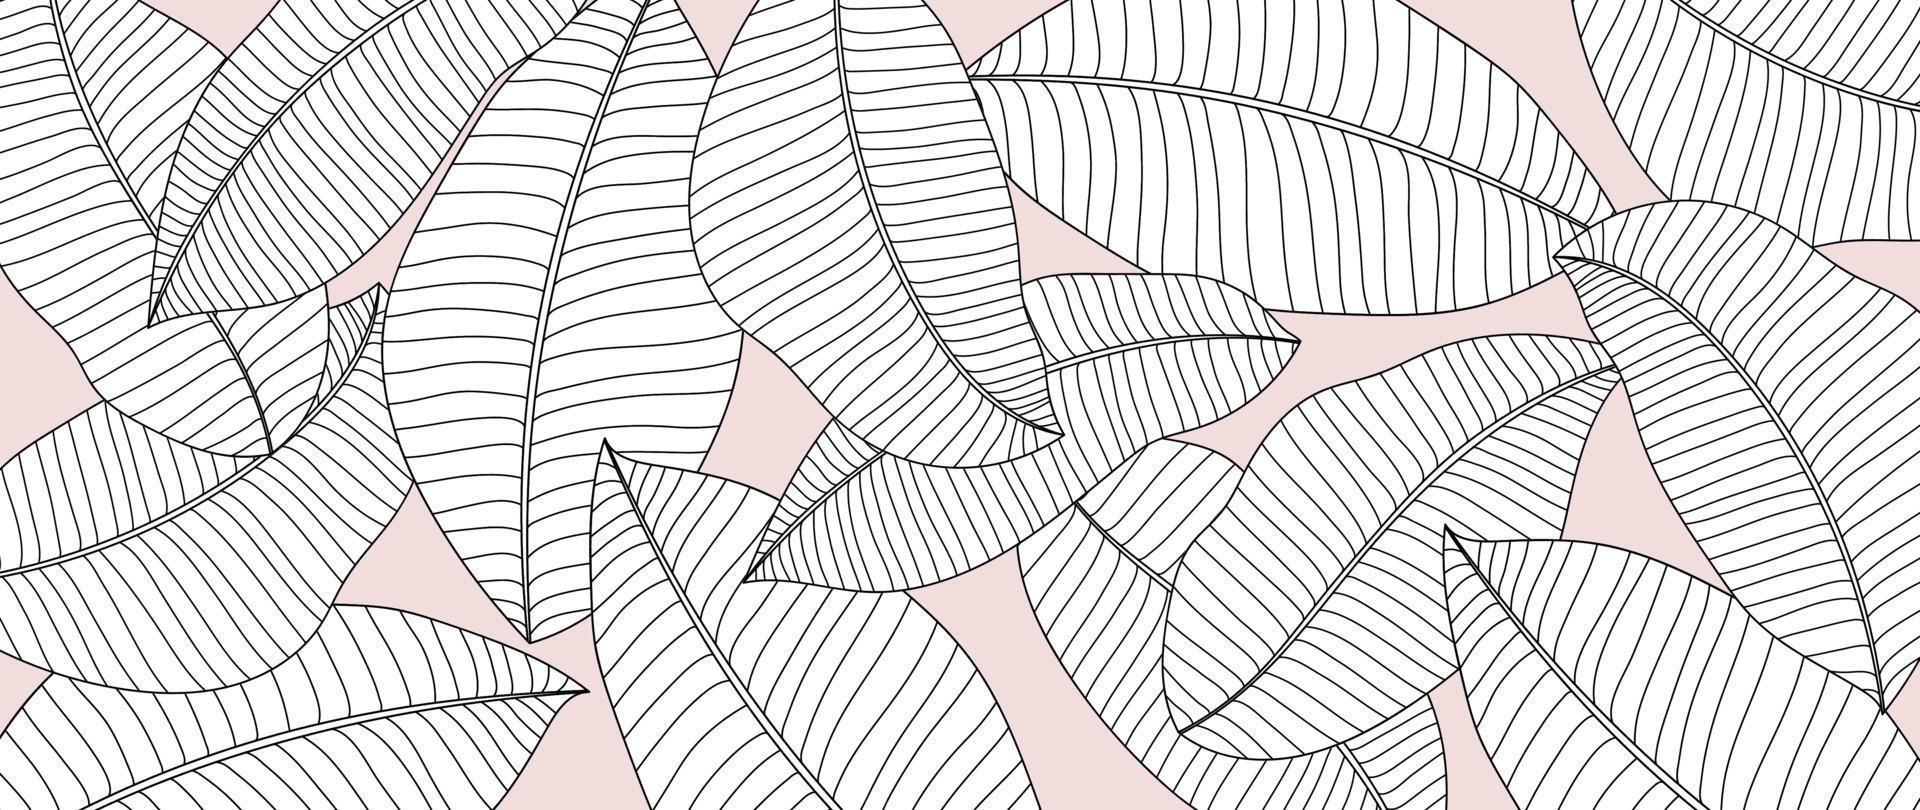 vector de fondo de rama de hoja de arte de línea dibujada a mano. hojas de palma botánicas tropicales con fondo de estilo simple de contorno de dibujo en blanco y negro. ilustración de diseño para impresiones, papel tapiz, afiche, tarjeta.